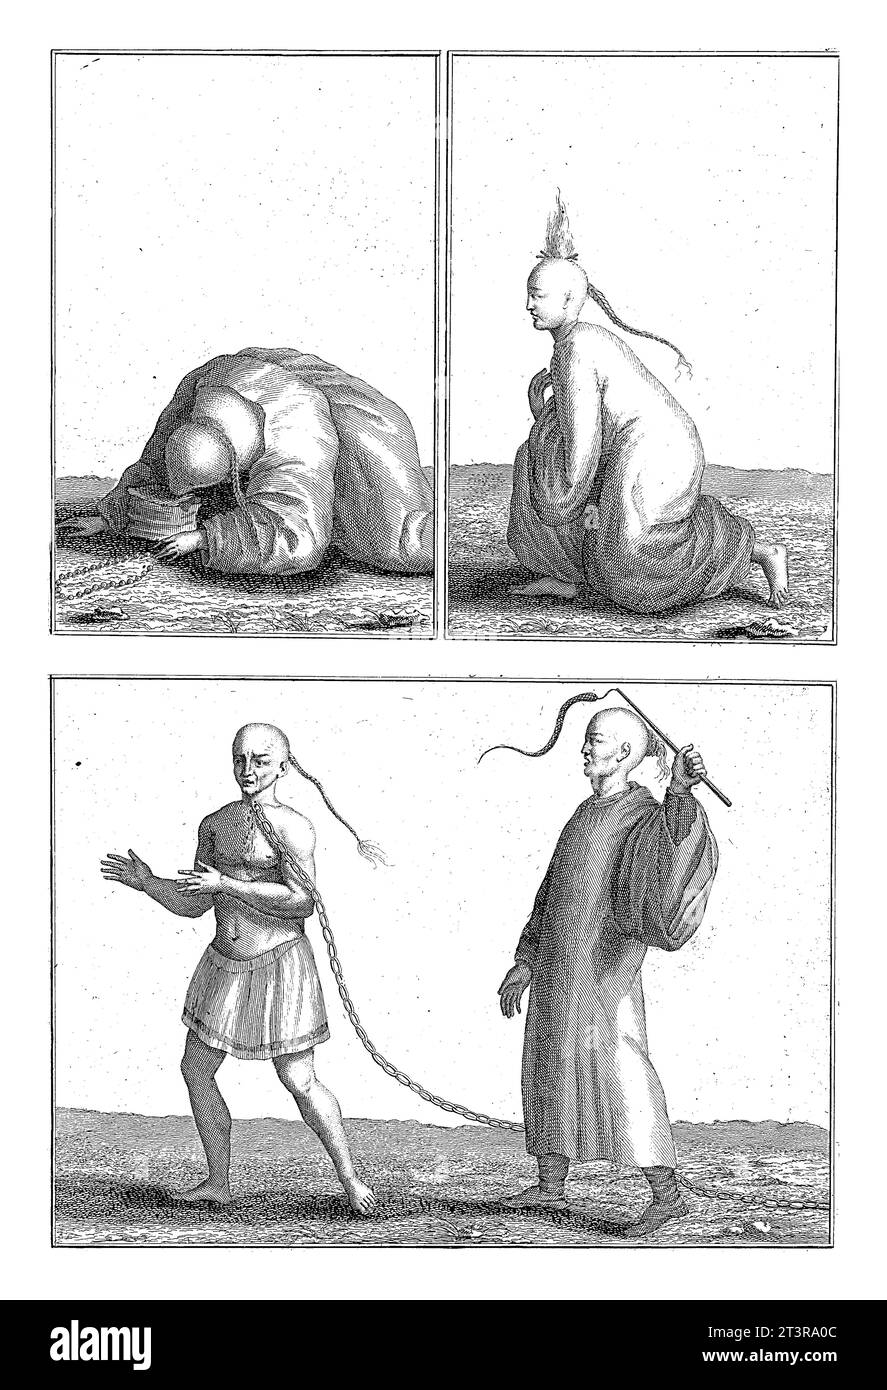 Monaci mendicanti cinesi che si tormentano, Bernard Picart (laboratorio di), 1728 Foglio con tre rappresentazioni di monaci mendicanti cinesi. Foto Stock